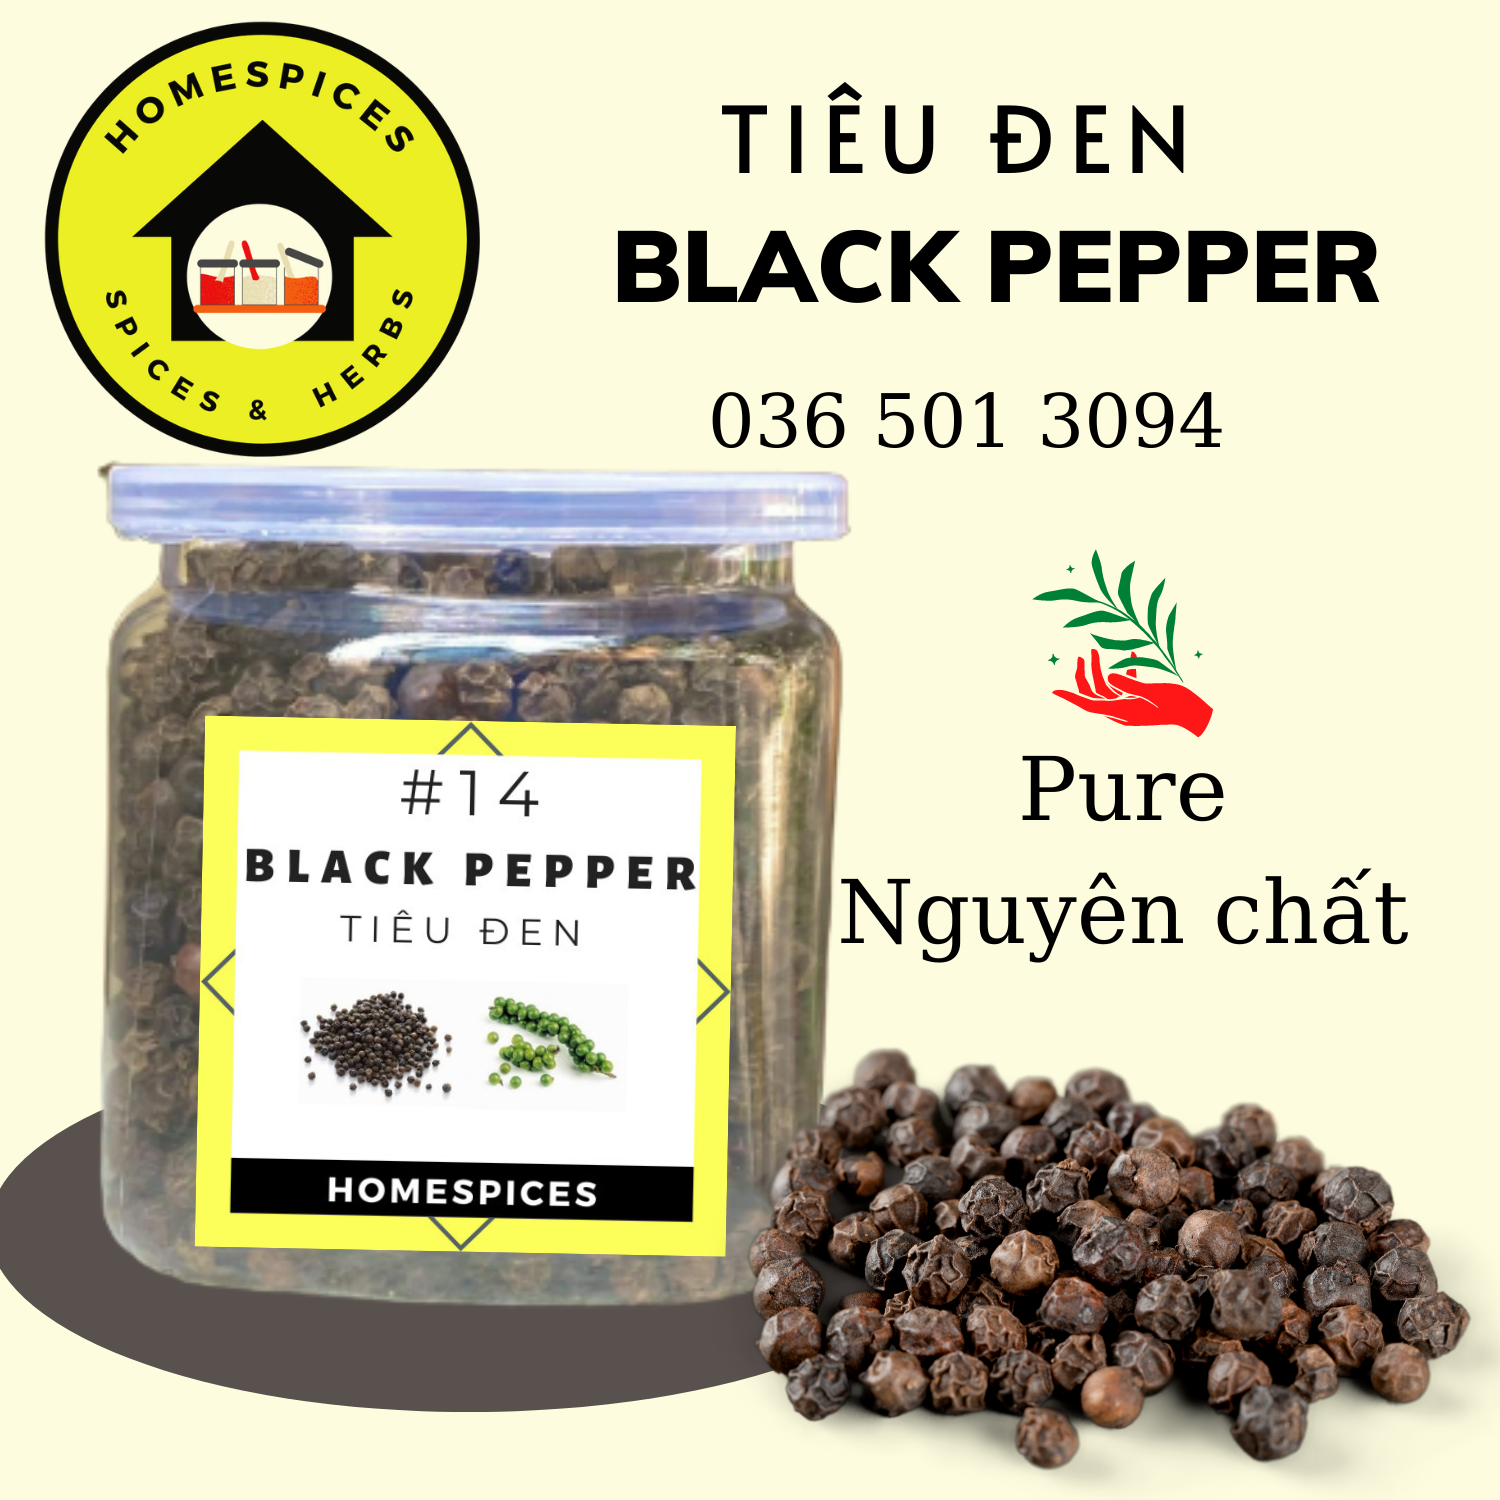 VOUCHER FREESHIP BÊN DƯỚI Tiêu đen nguyên hạt - Whole Black pepper Tiêu